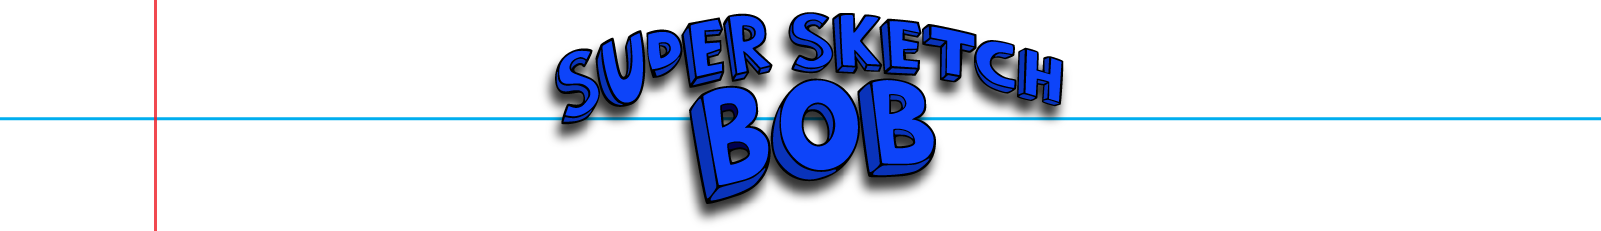 Super Sketch Bob